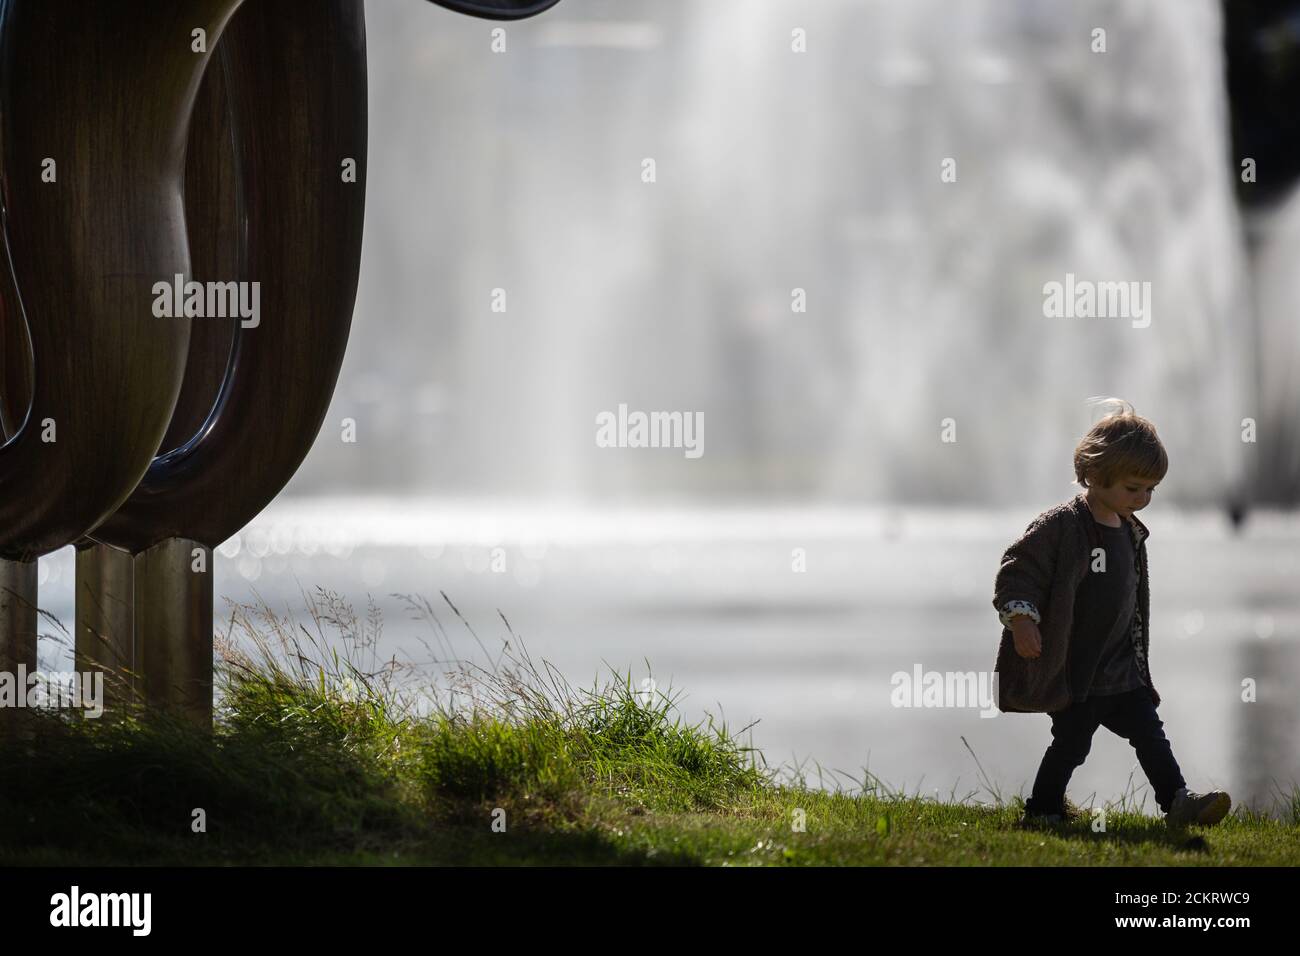 Petit garçon à côté d'une grande sculpture, fontaine derrière Banque D'Images